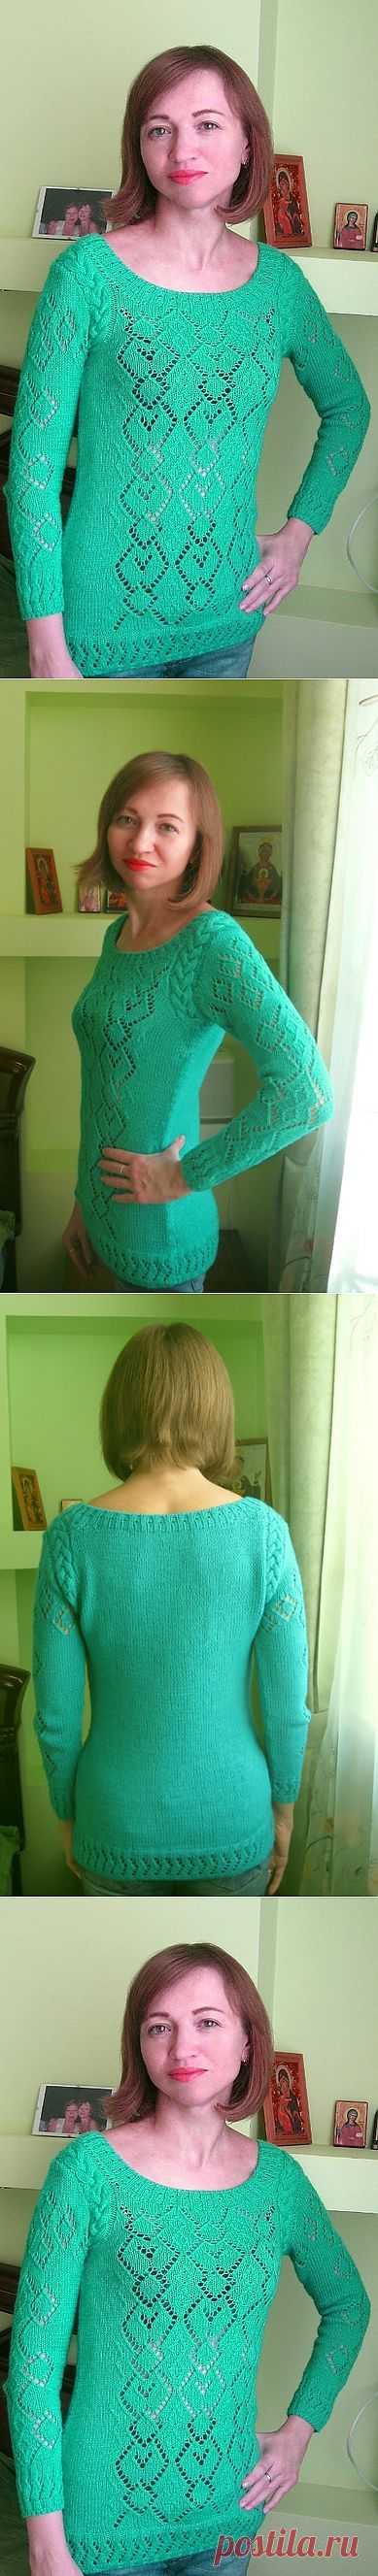 Бирюзовый ажурный пуловер.